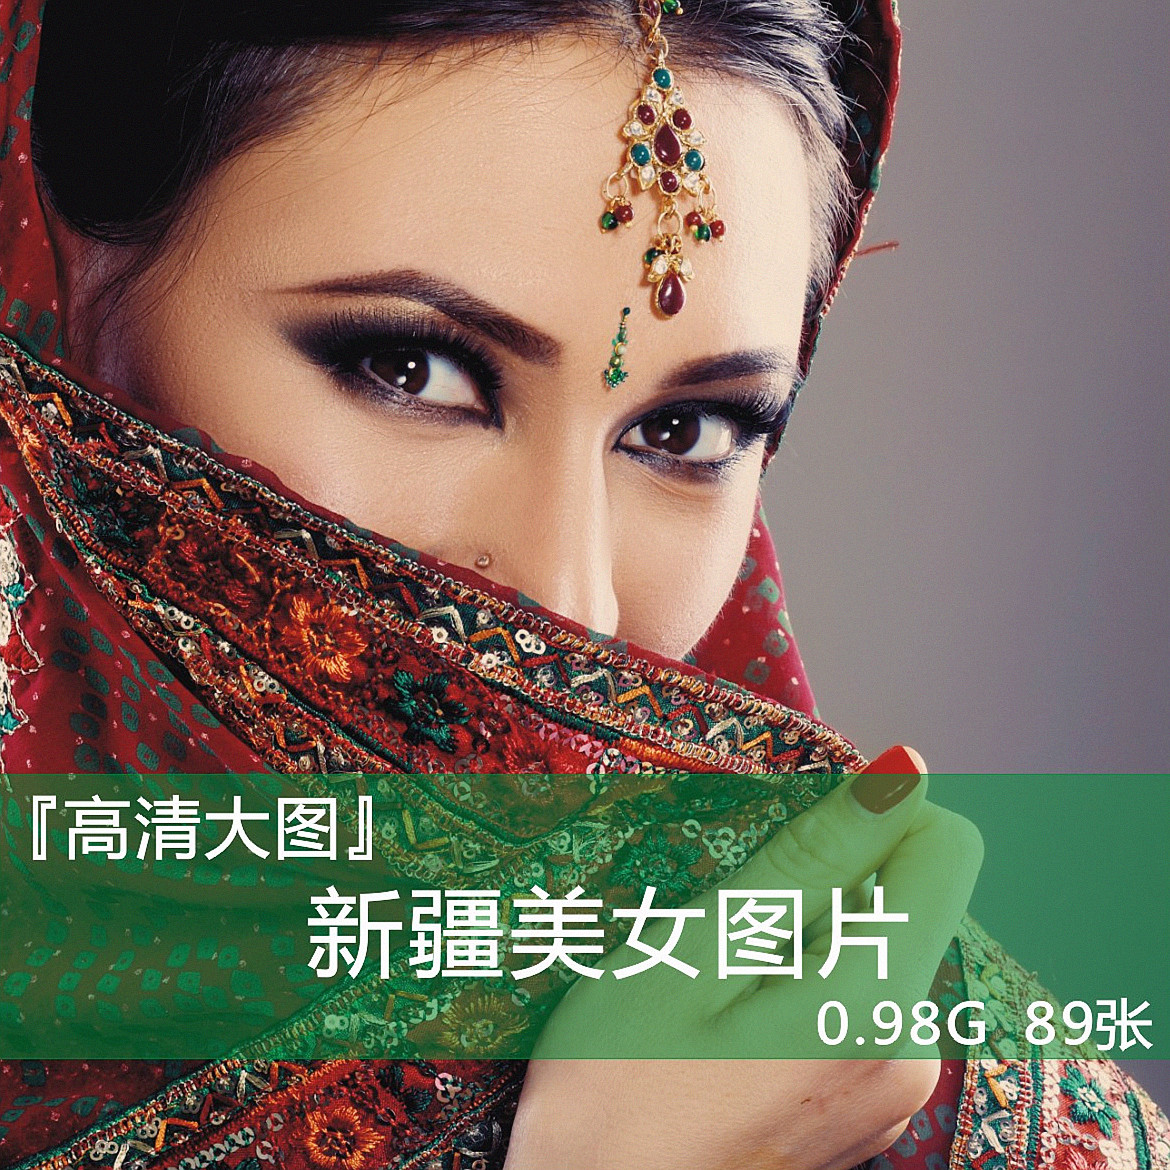 新疆美女 平面 设计 高清 图库 图片 海报 背景 合集 画集 素材